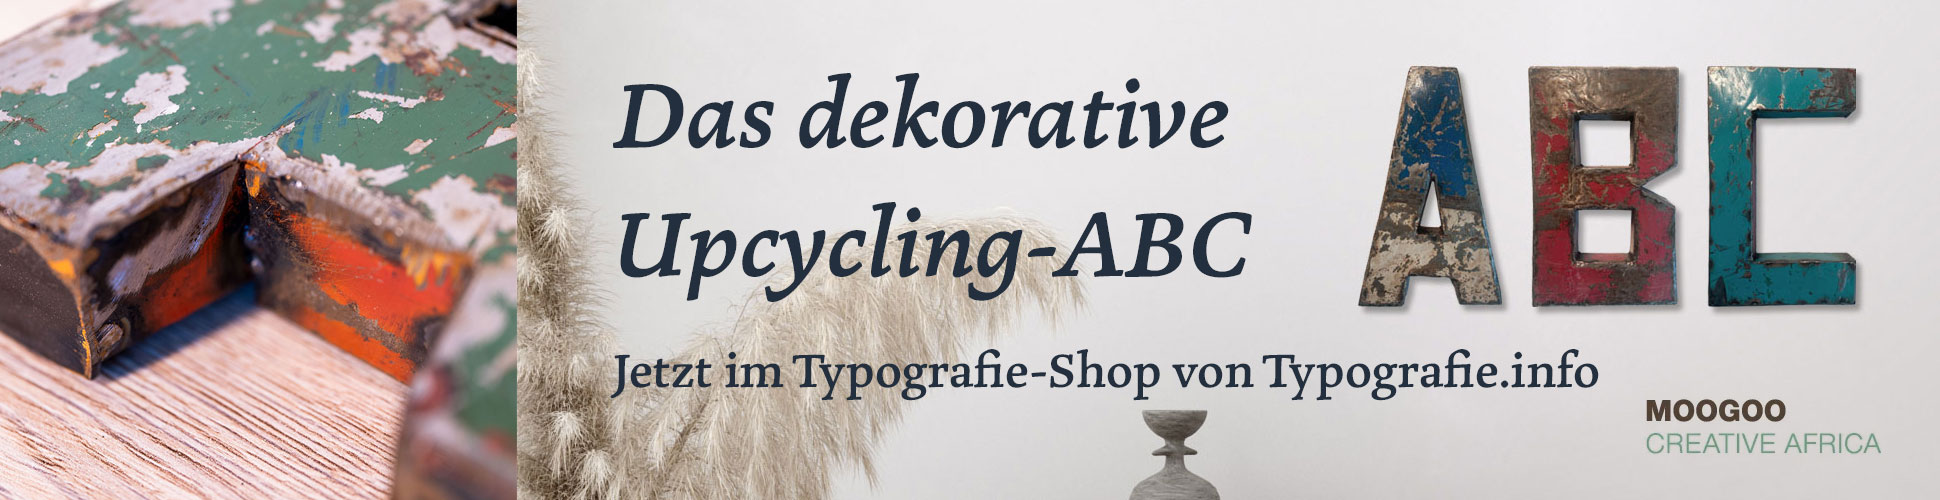 Das dekorative Upcycling-ABC aus Metall. Jetzt im Shop von Typografie.info. 